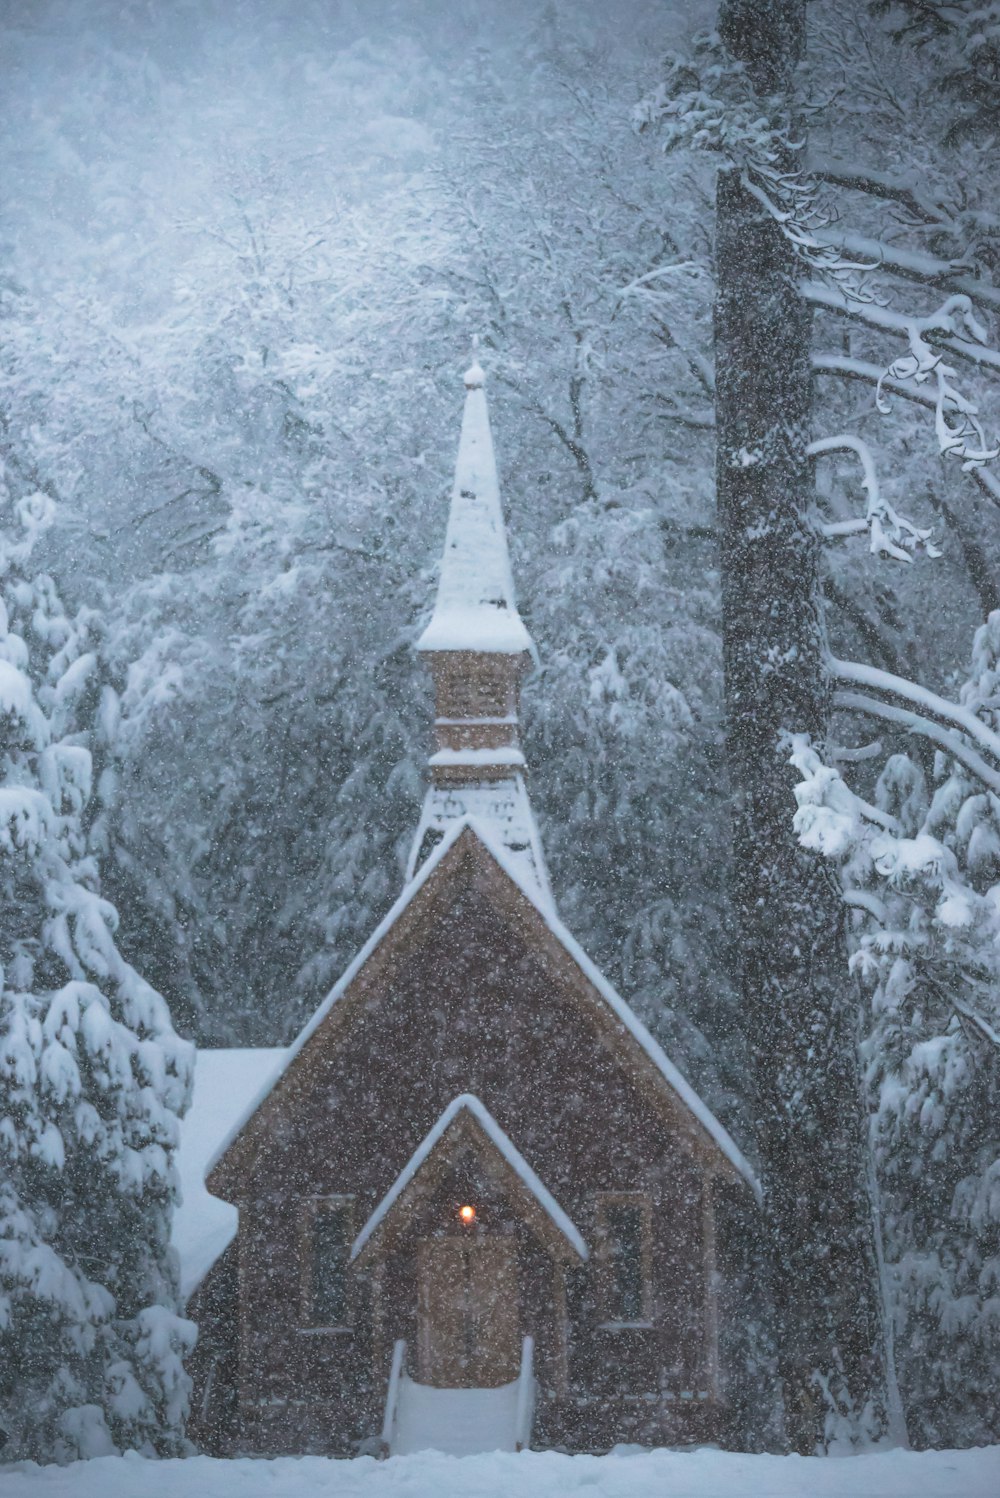 森の中にある雪をかぶった茶色の木造家屋